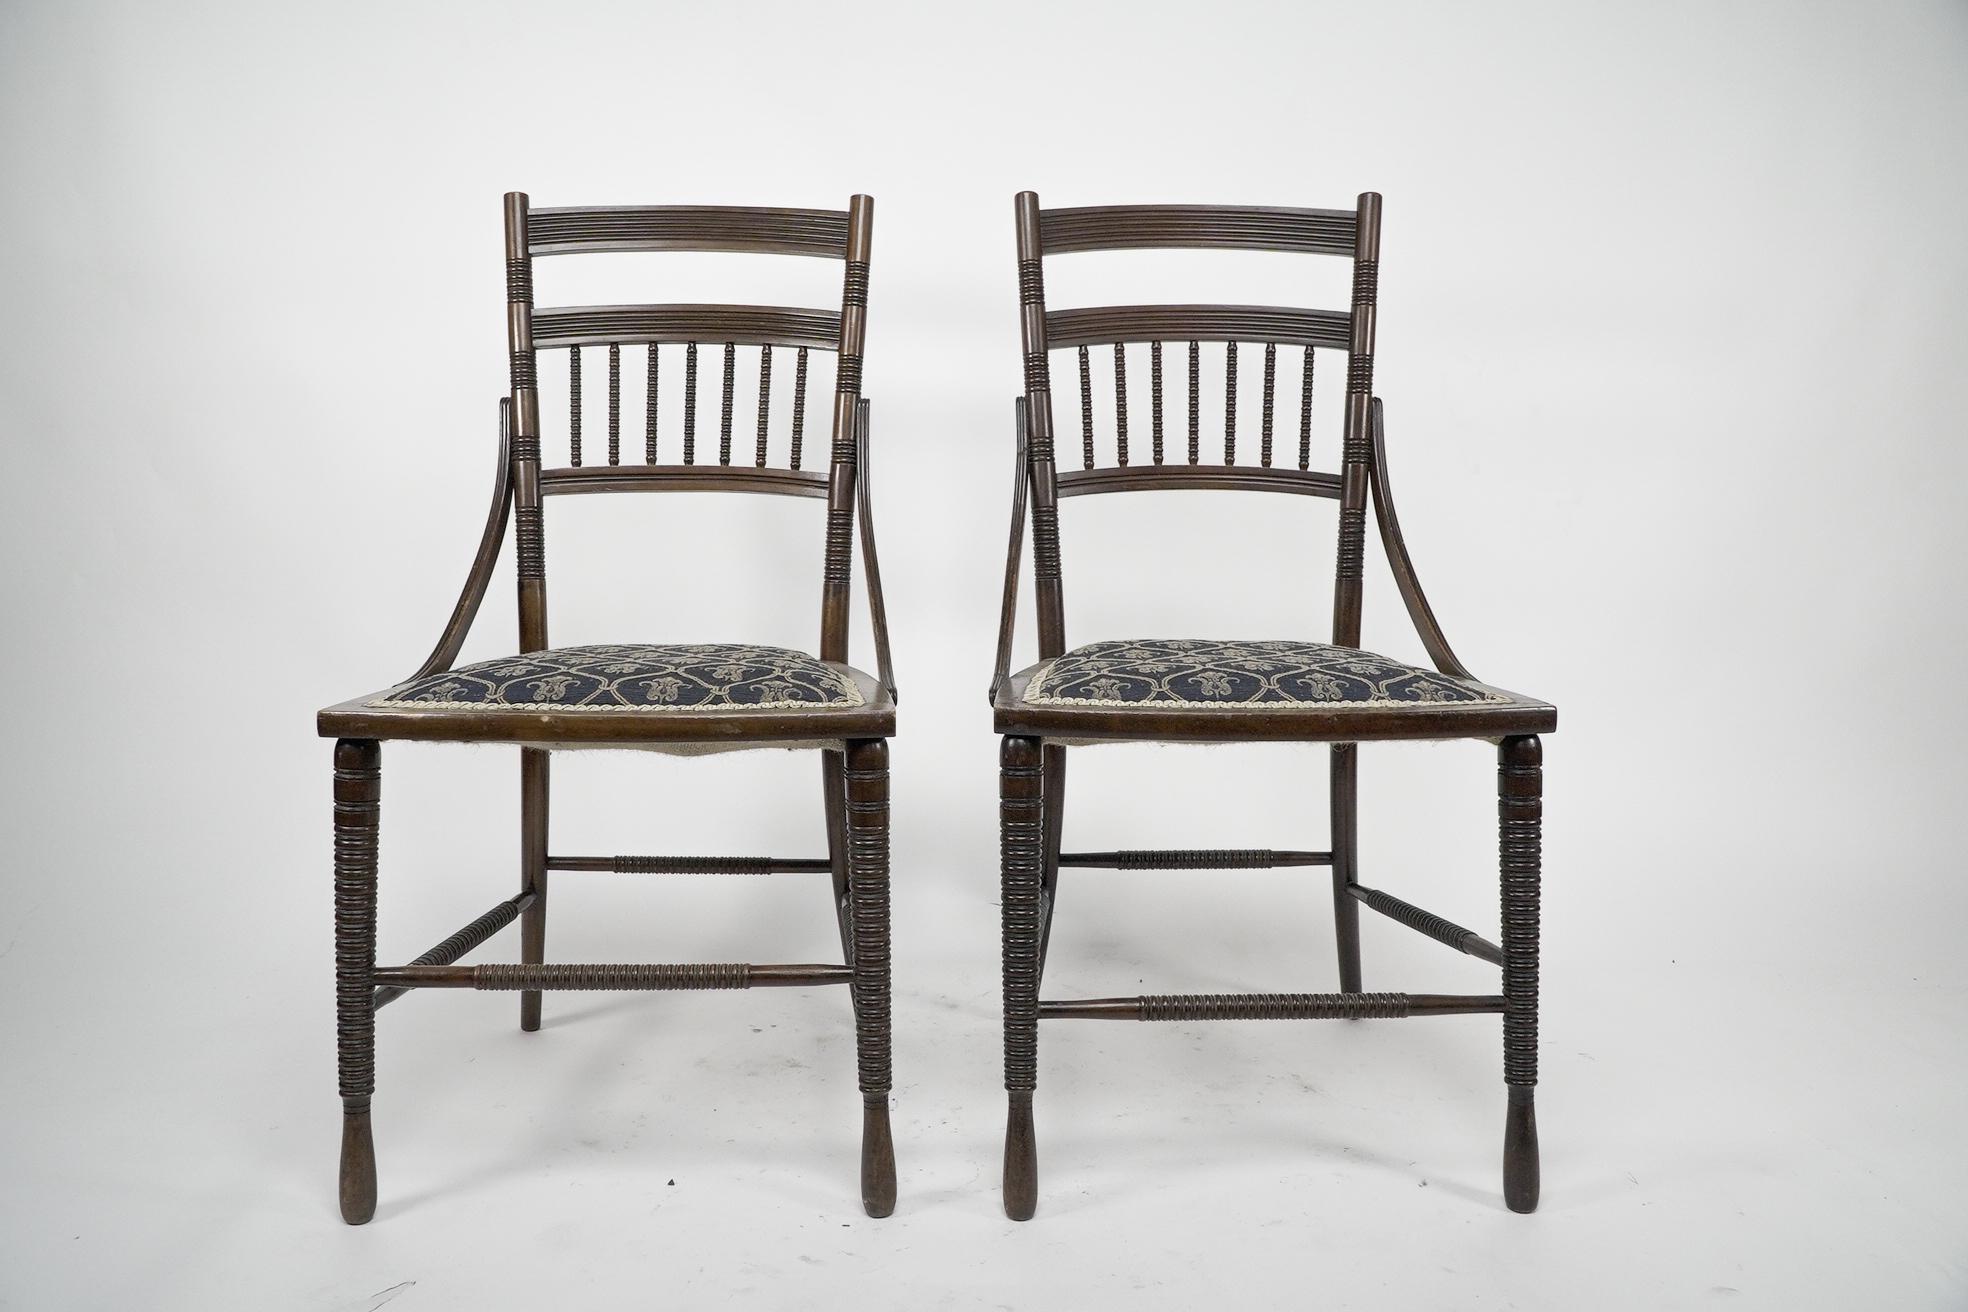 R. W. Edis, wahrscheinlich von Jackson und Graham hergestellt. Ein feines Paar Beistellstühle aus Nussbaumholz der Ästhetischen Bewegung mit feinen ringgedrehten und eingeschnittenen Fahrgassendetails und geschwungenen Seitenstützen. Ein Stuhl